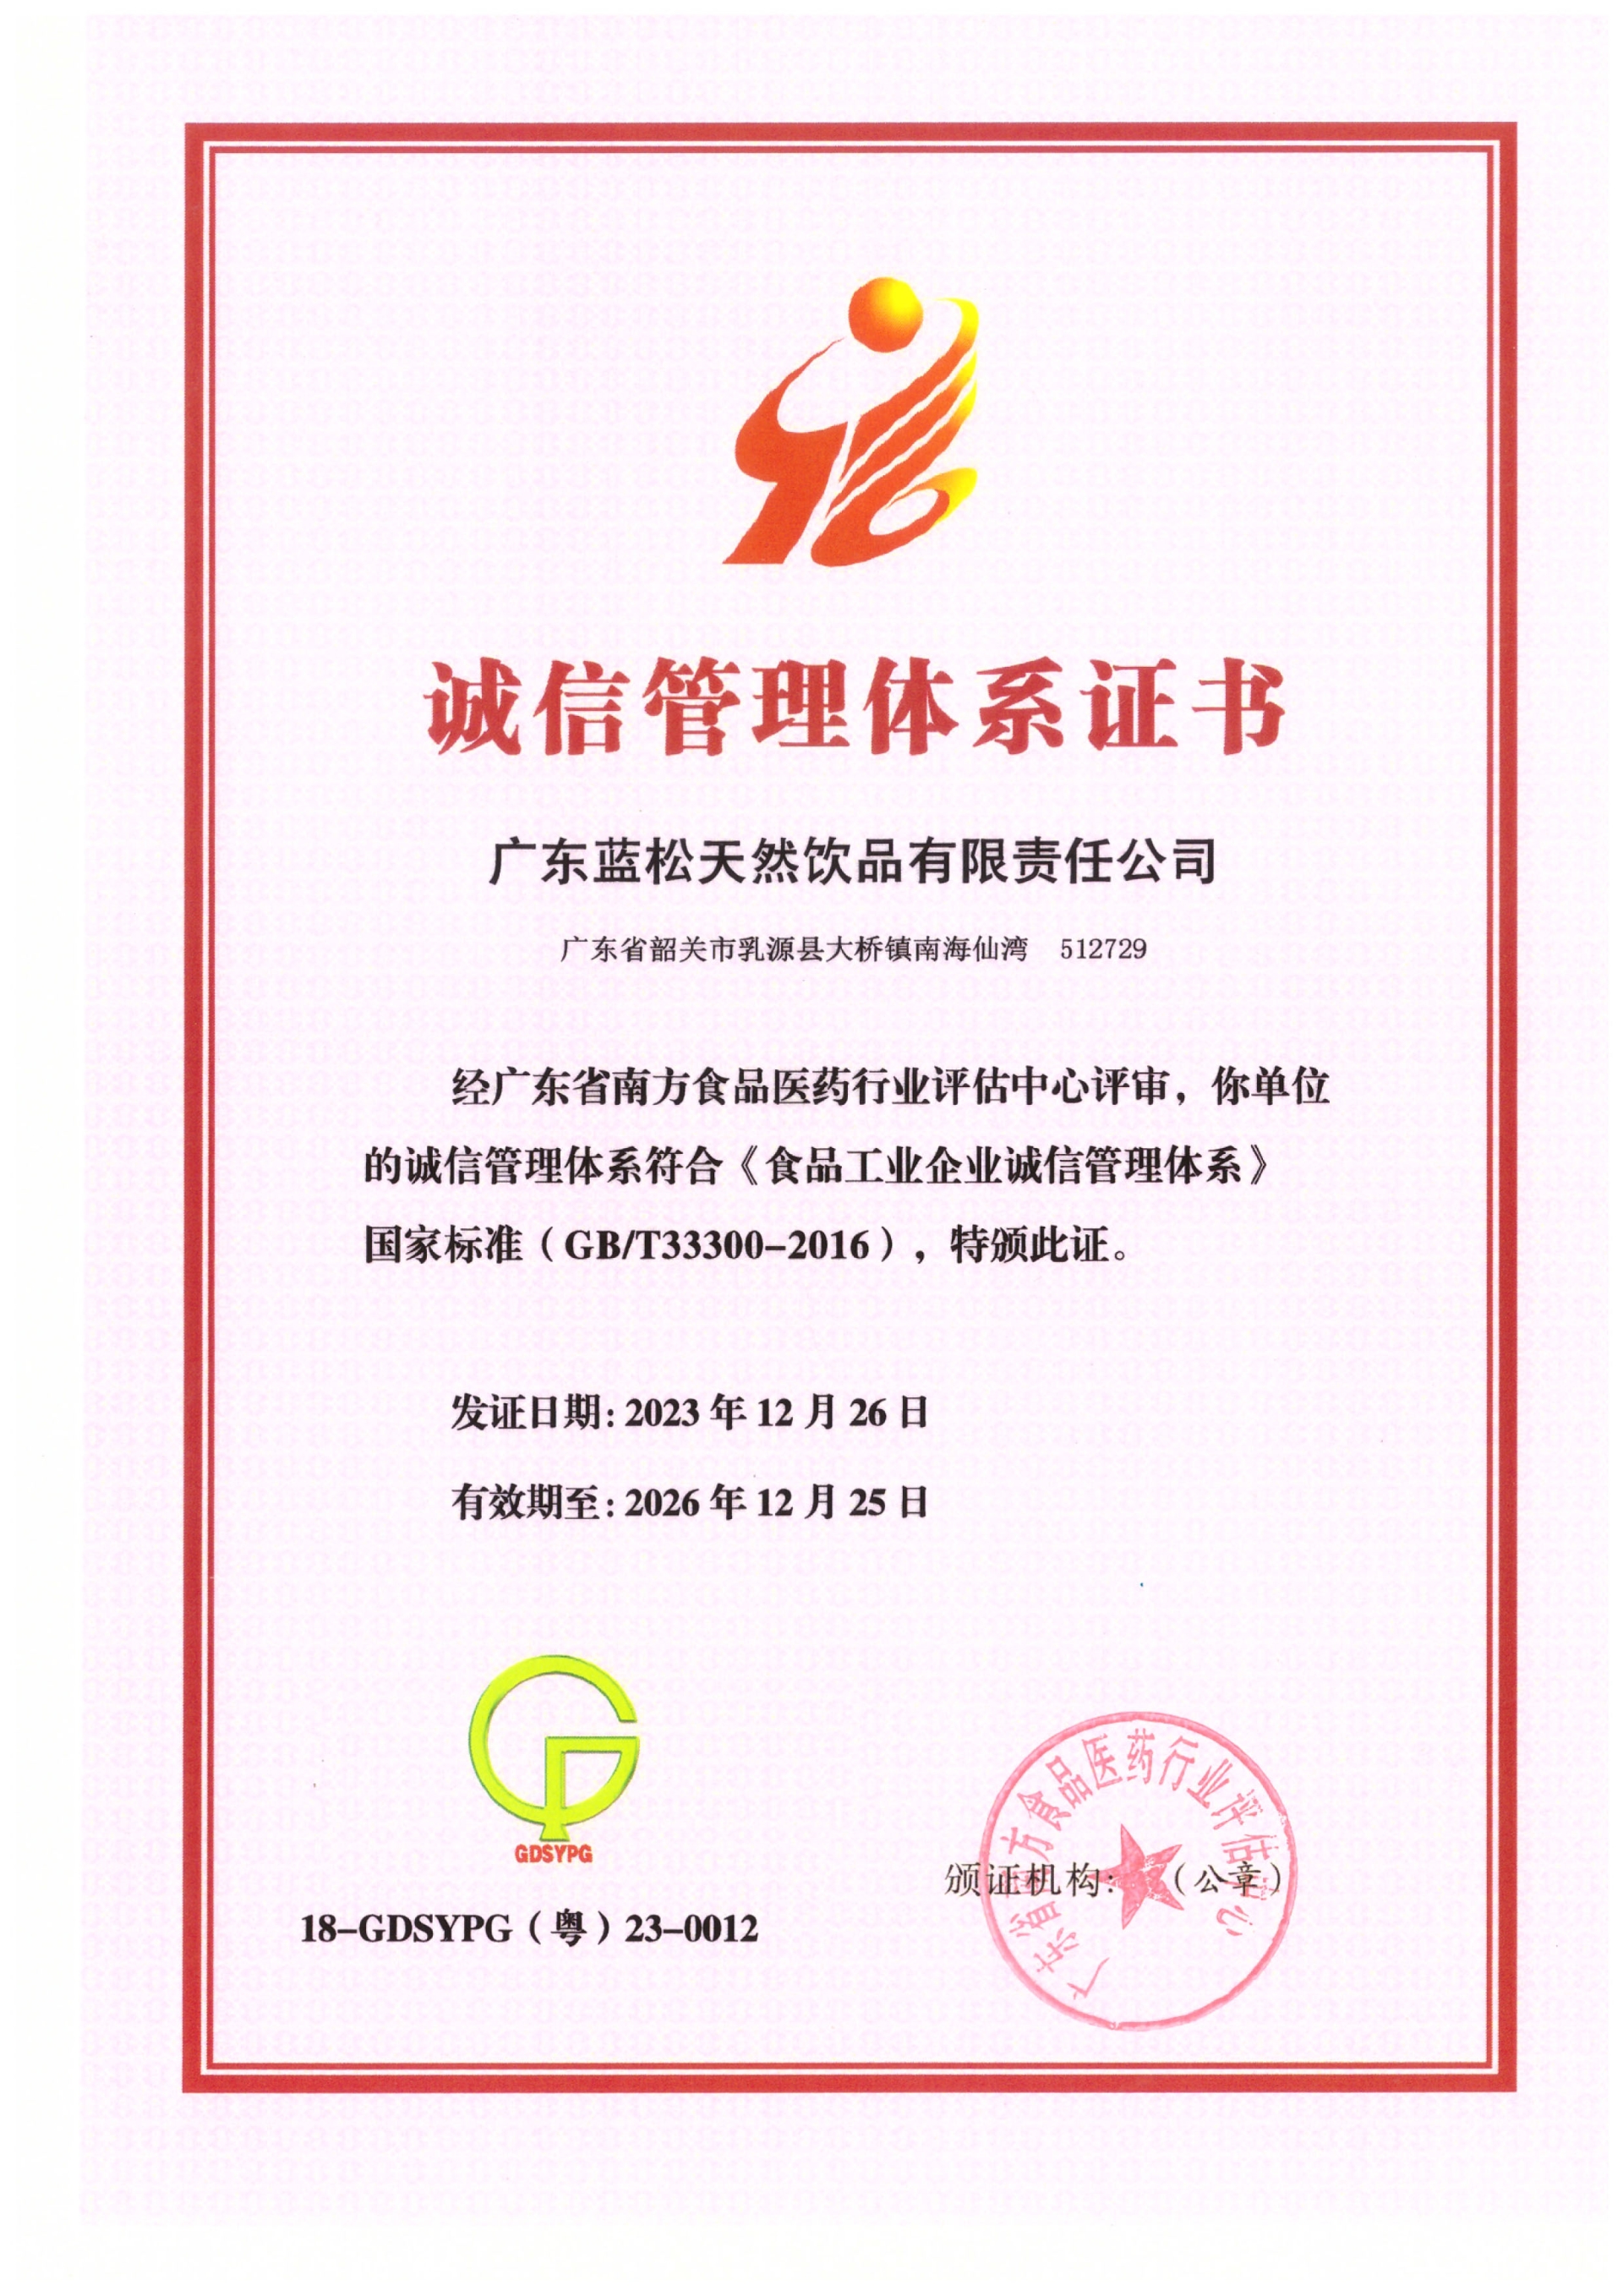 广东云顶集团3118获食物工业企业诚信治理系统认证